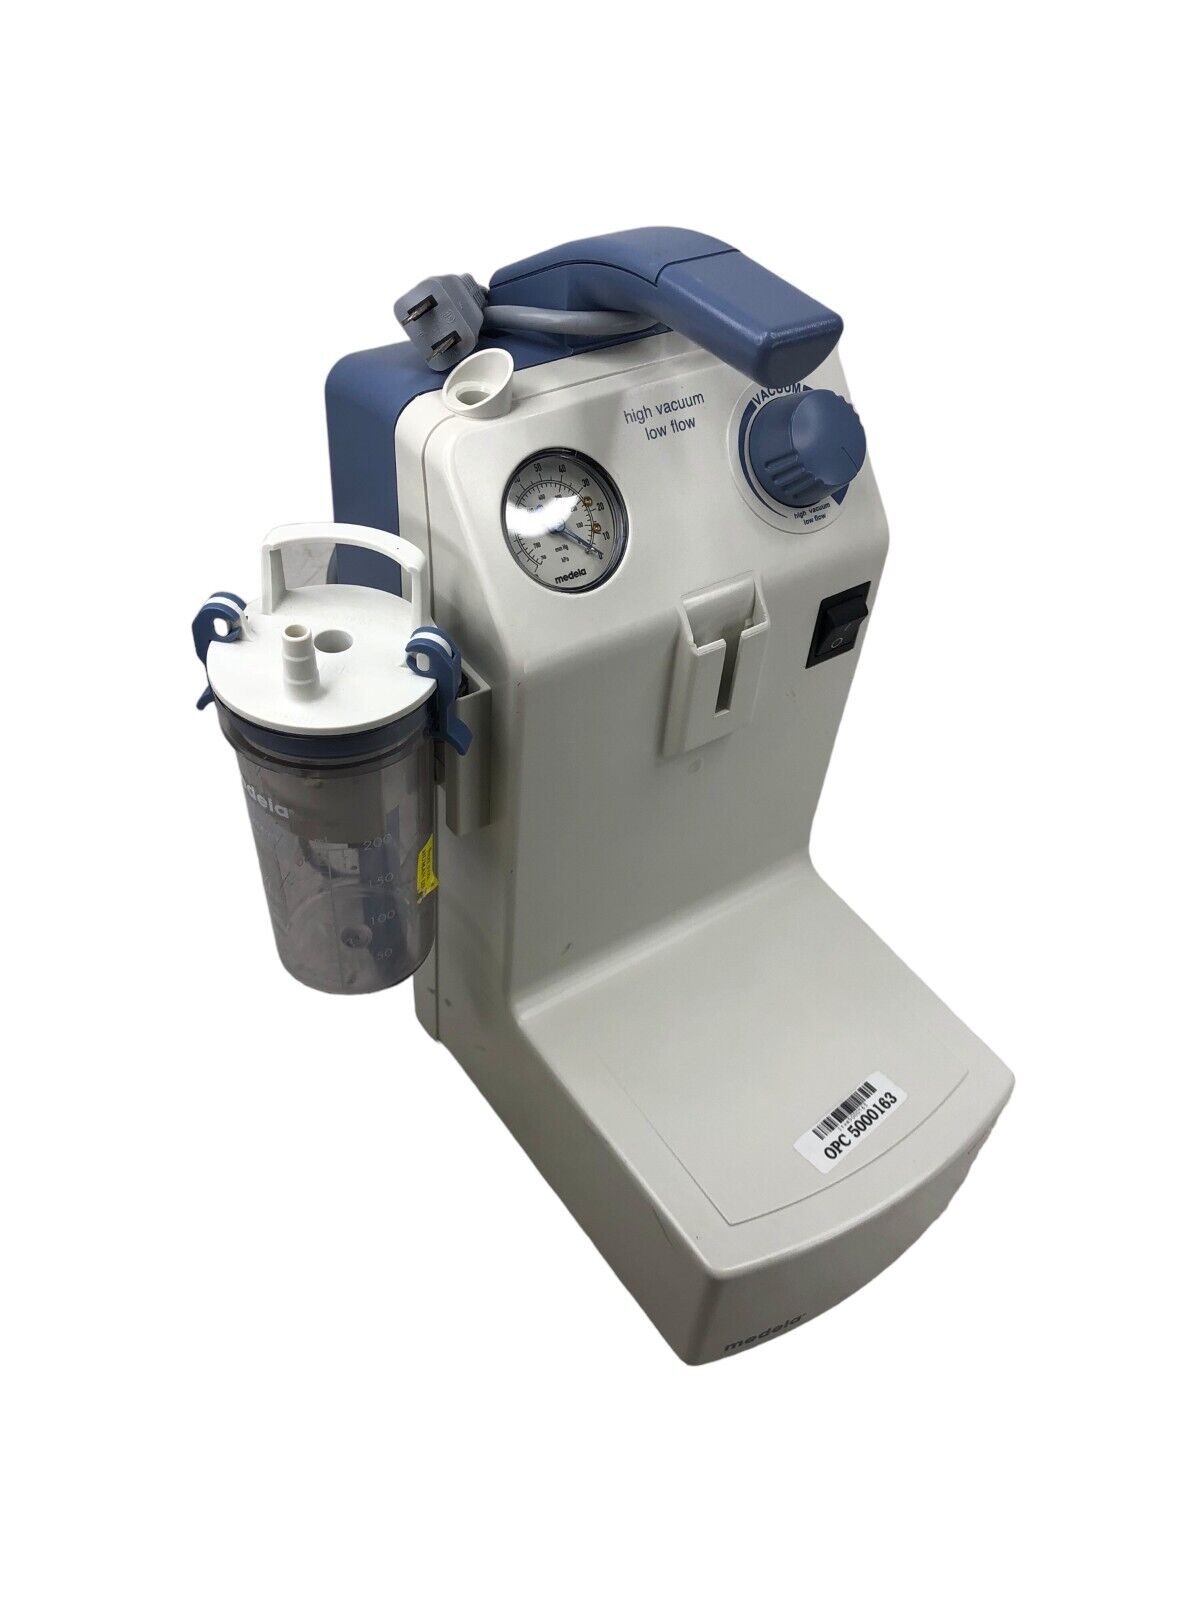 Medela Vario 18 Portable Suction Pump Aspirator